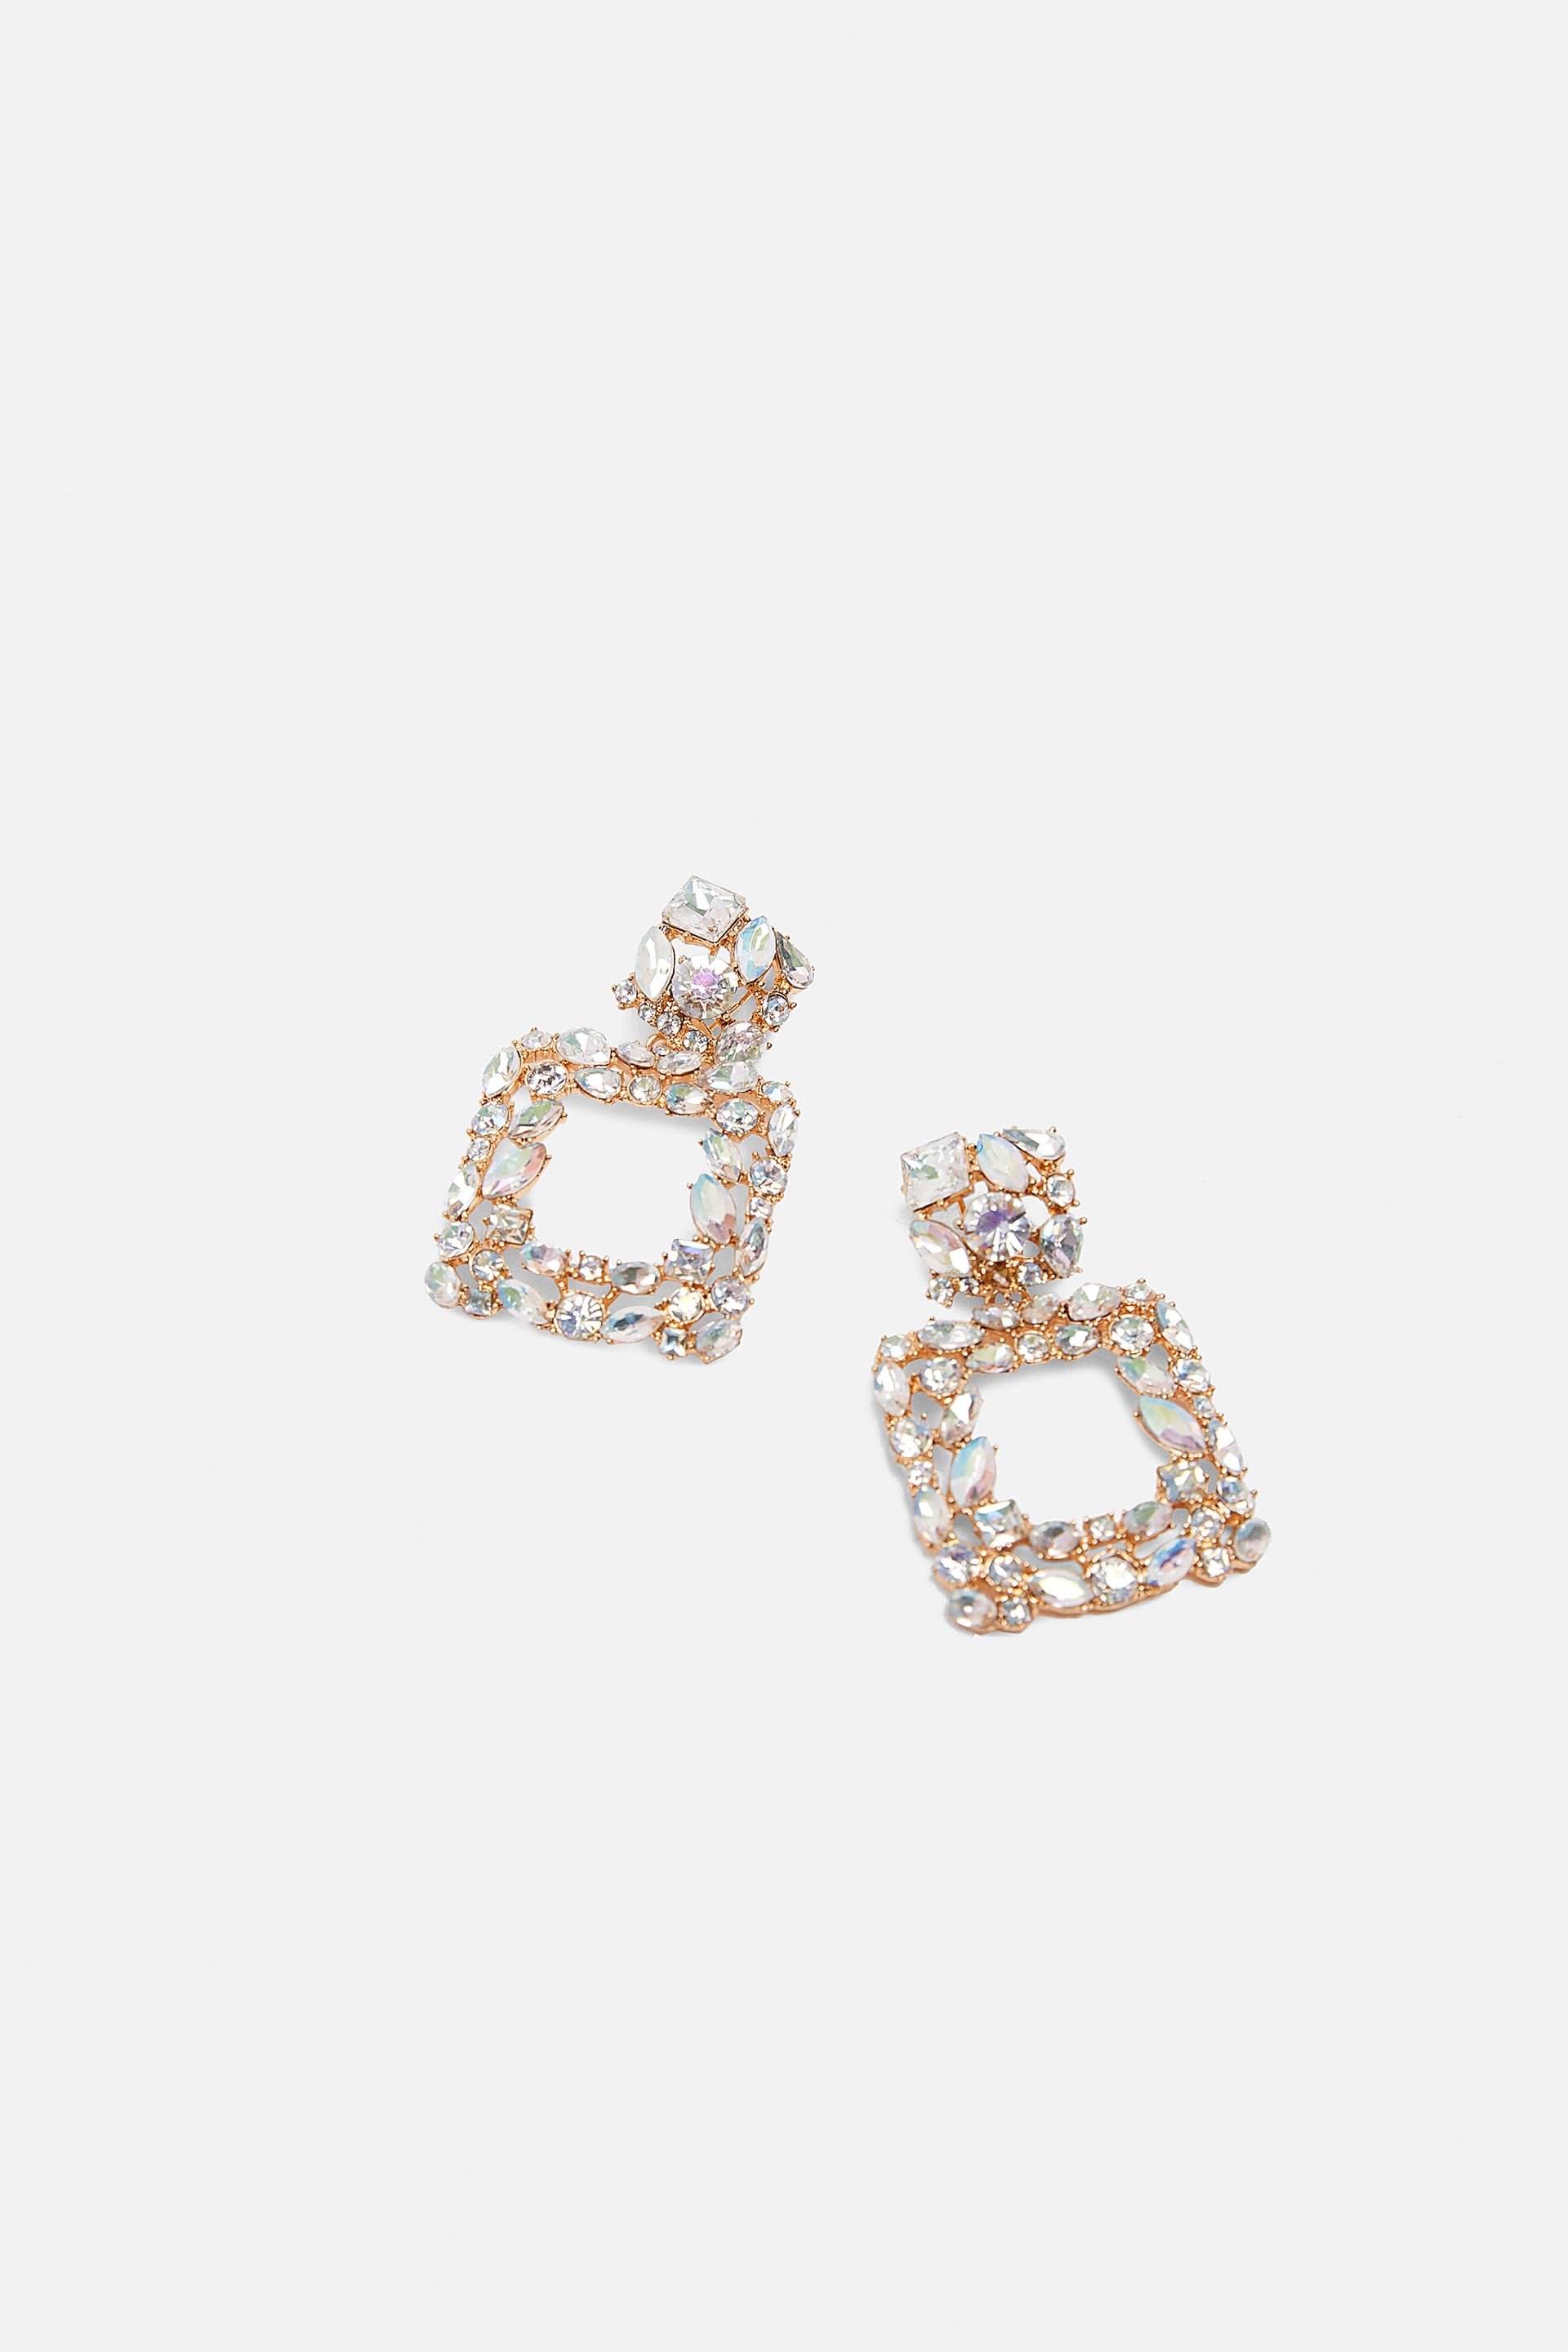 Zara Jewel Earrings | 9 Jewelry Trends 